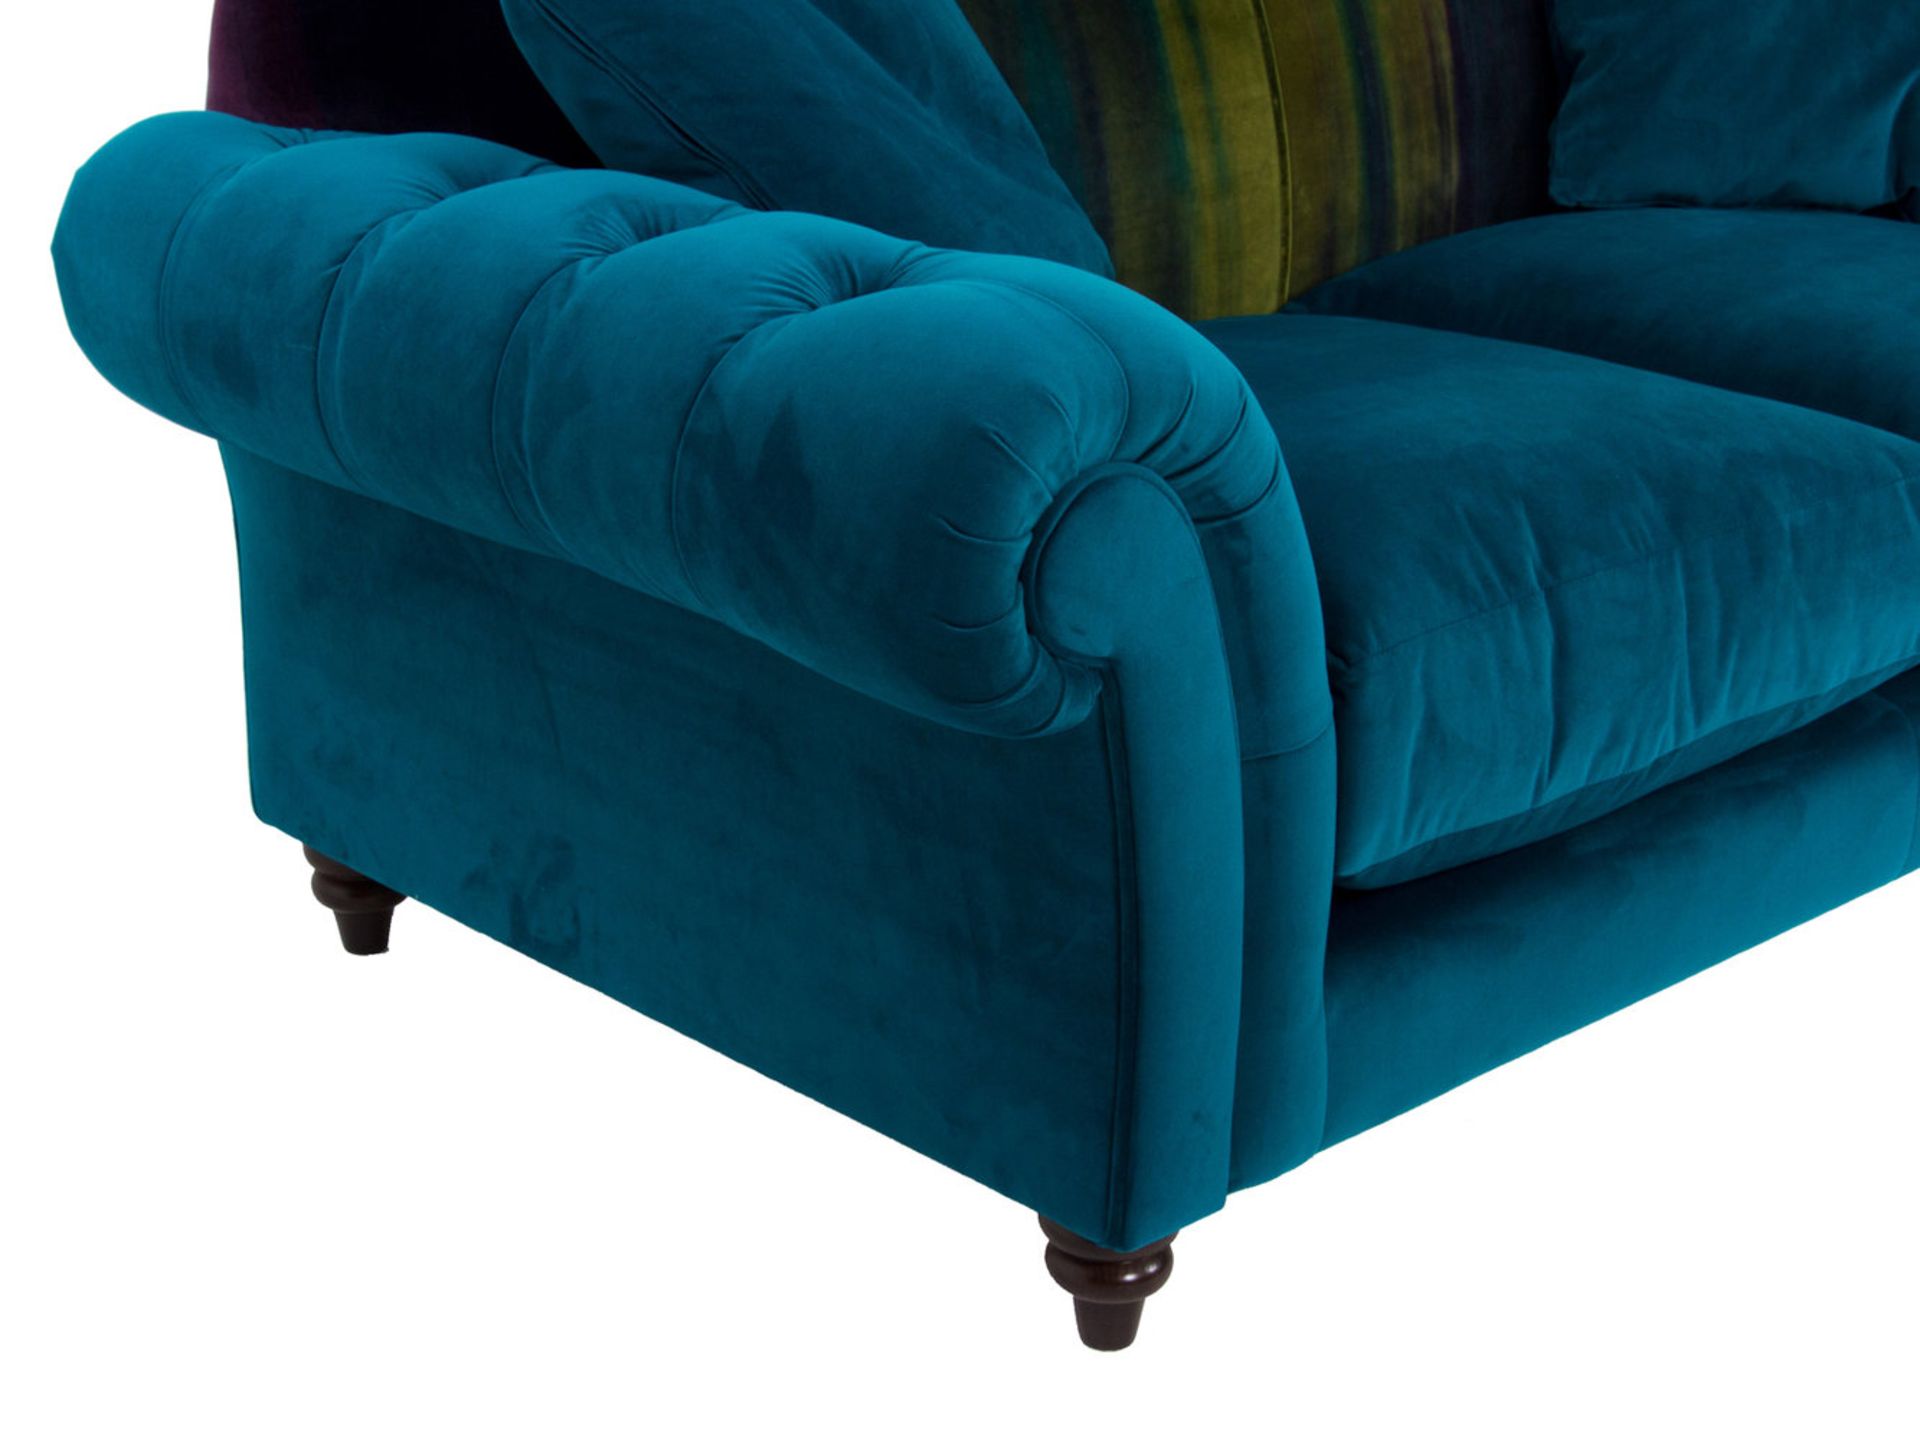 1 x Lytton Mallard Sofa Upholstered in Harlequin Velvet Fabric - RRP £1,259! - Image 4 of 7